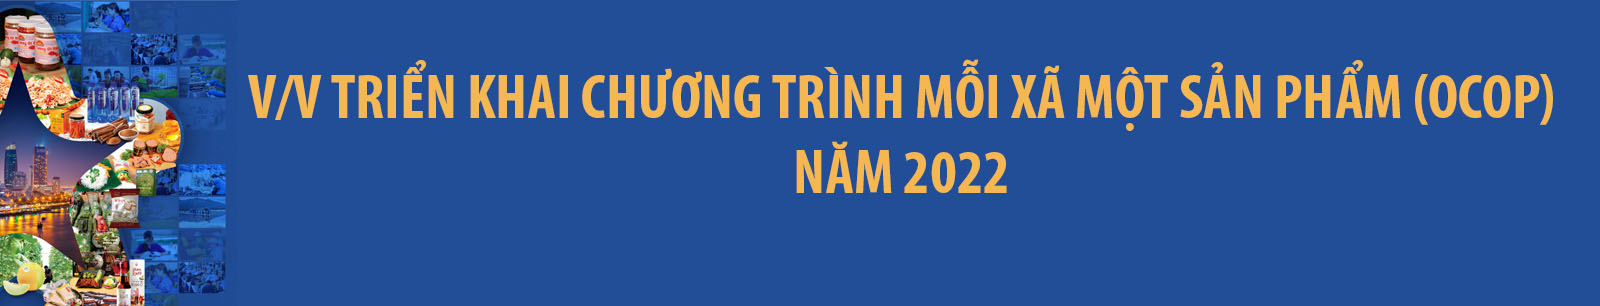 Cac Van Ban Lien Quan Chuong Trinh Ocop Tren Dia Ban Thanh Pho Da Nang 01